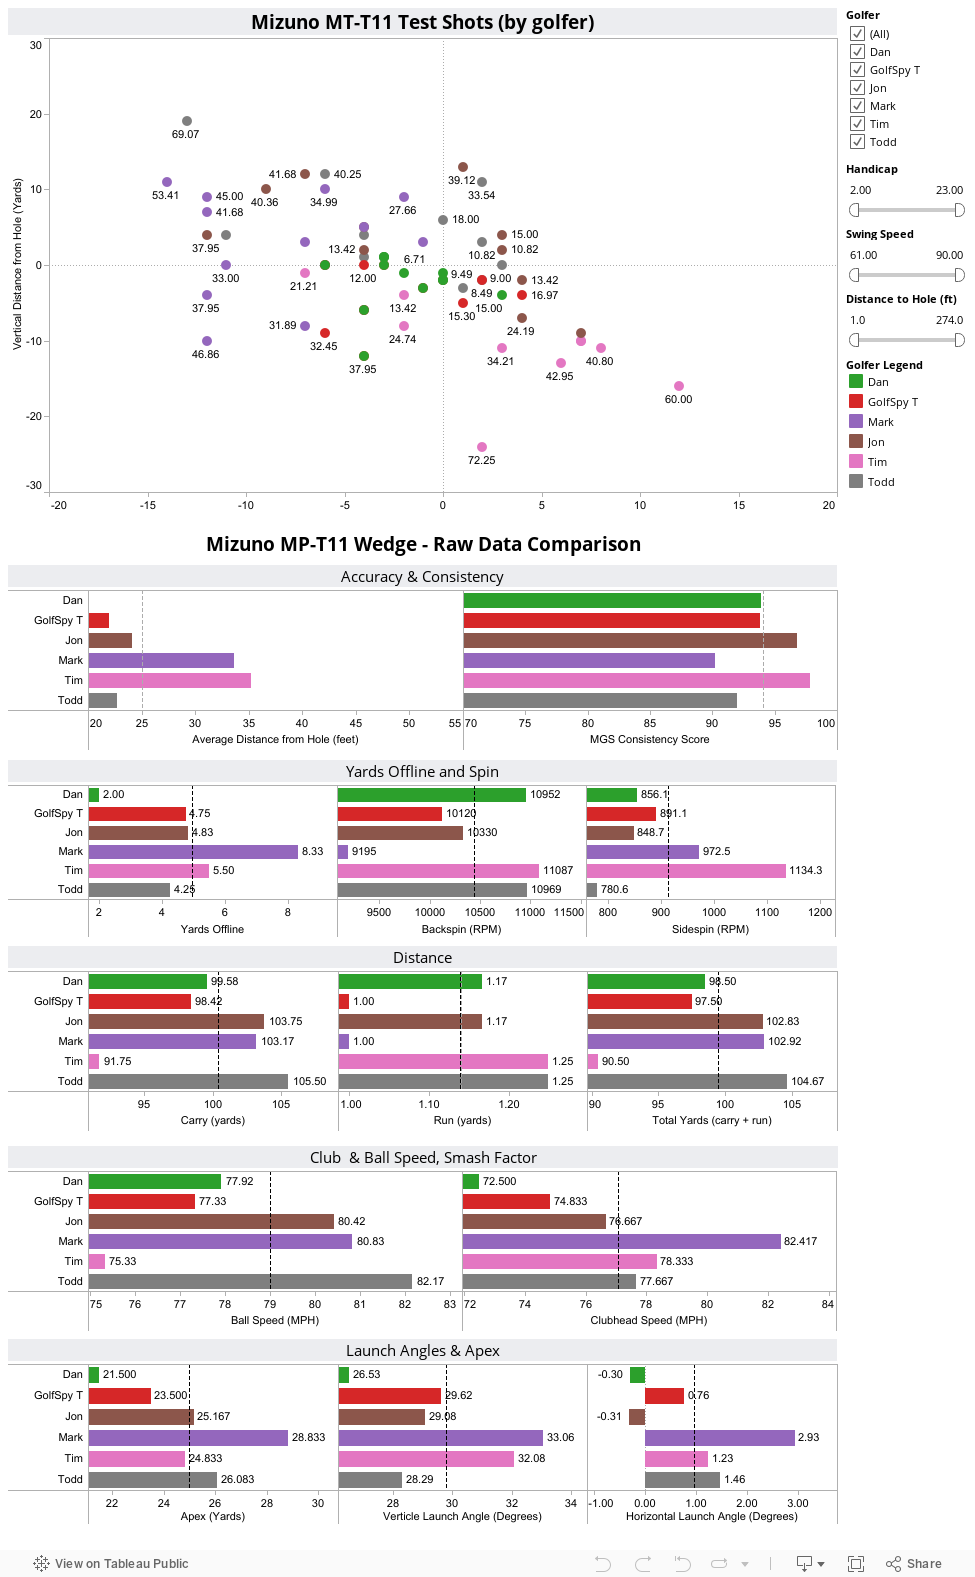 Mizuno MP-T11 Wedge - Raw Data Comparison 